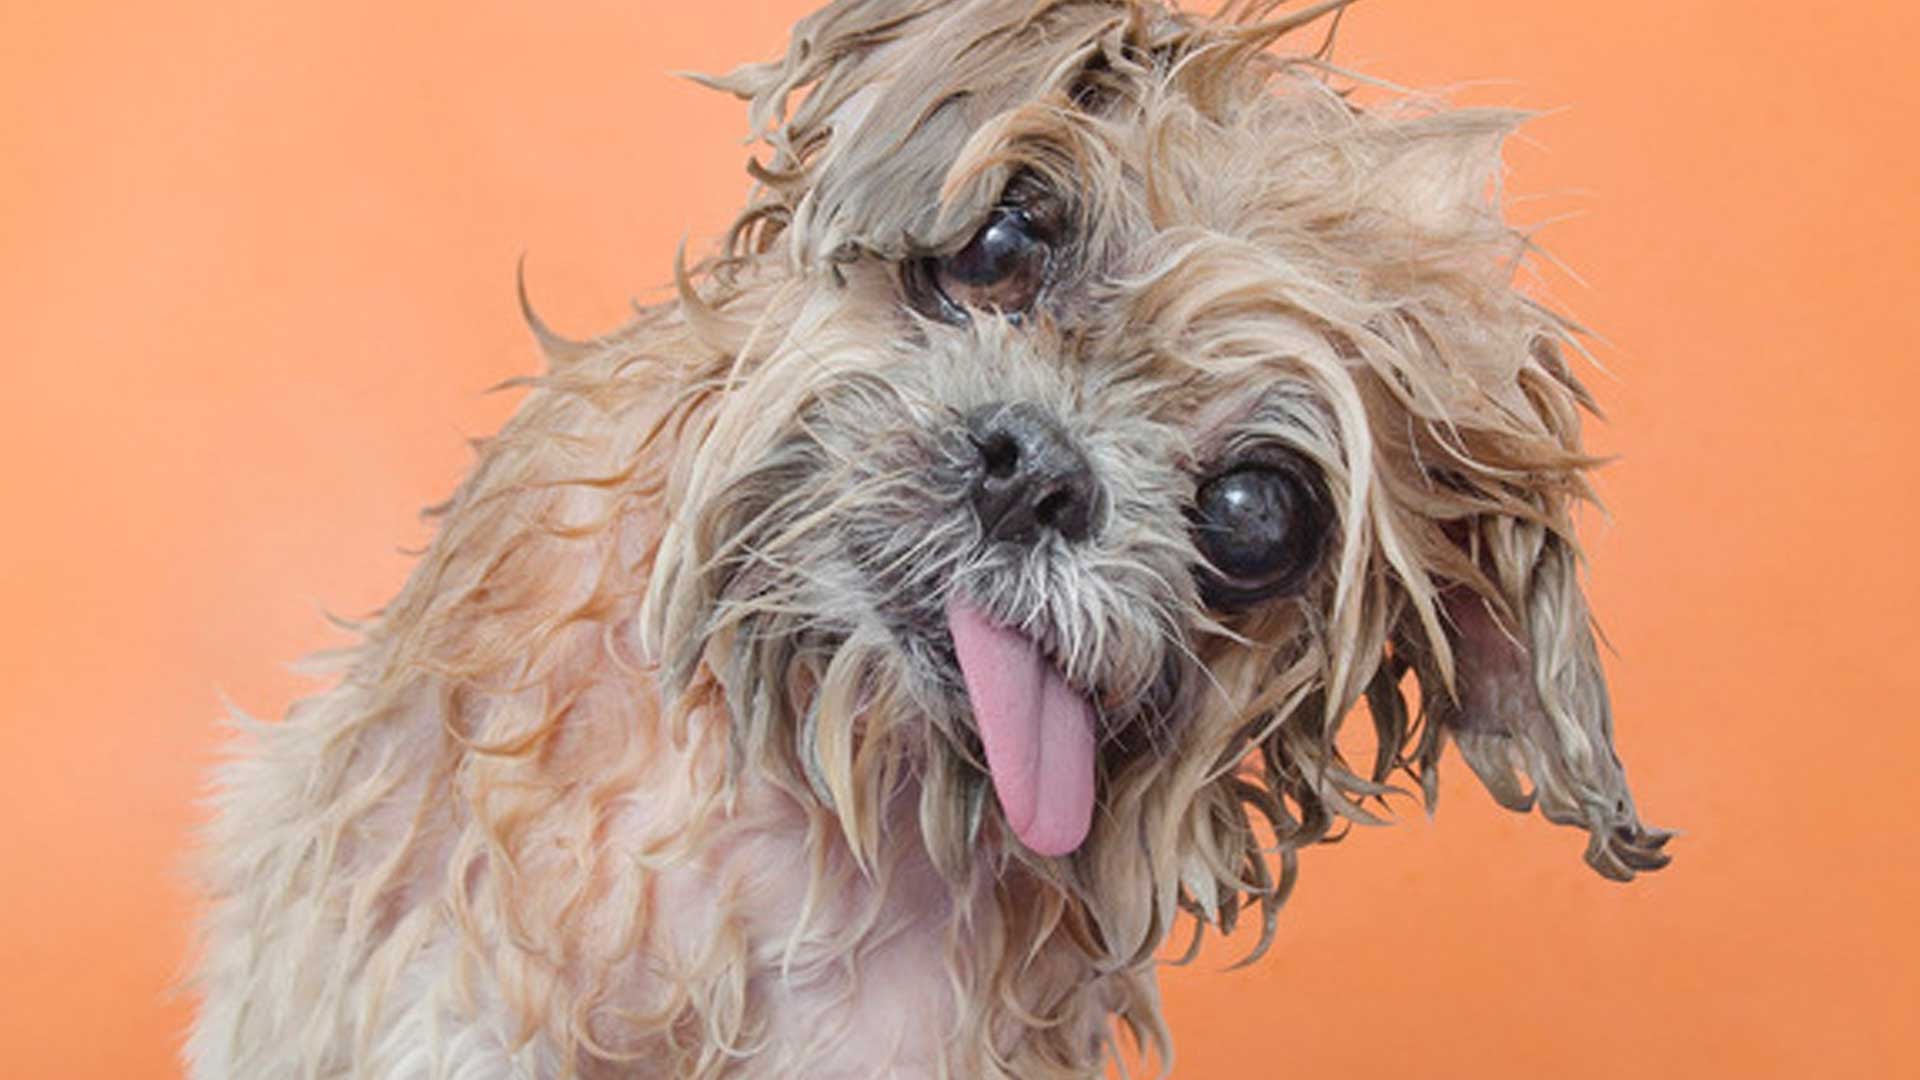 Wet dog photo